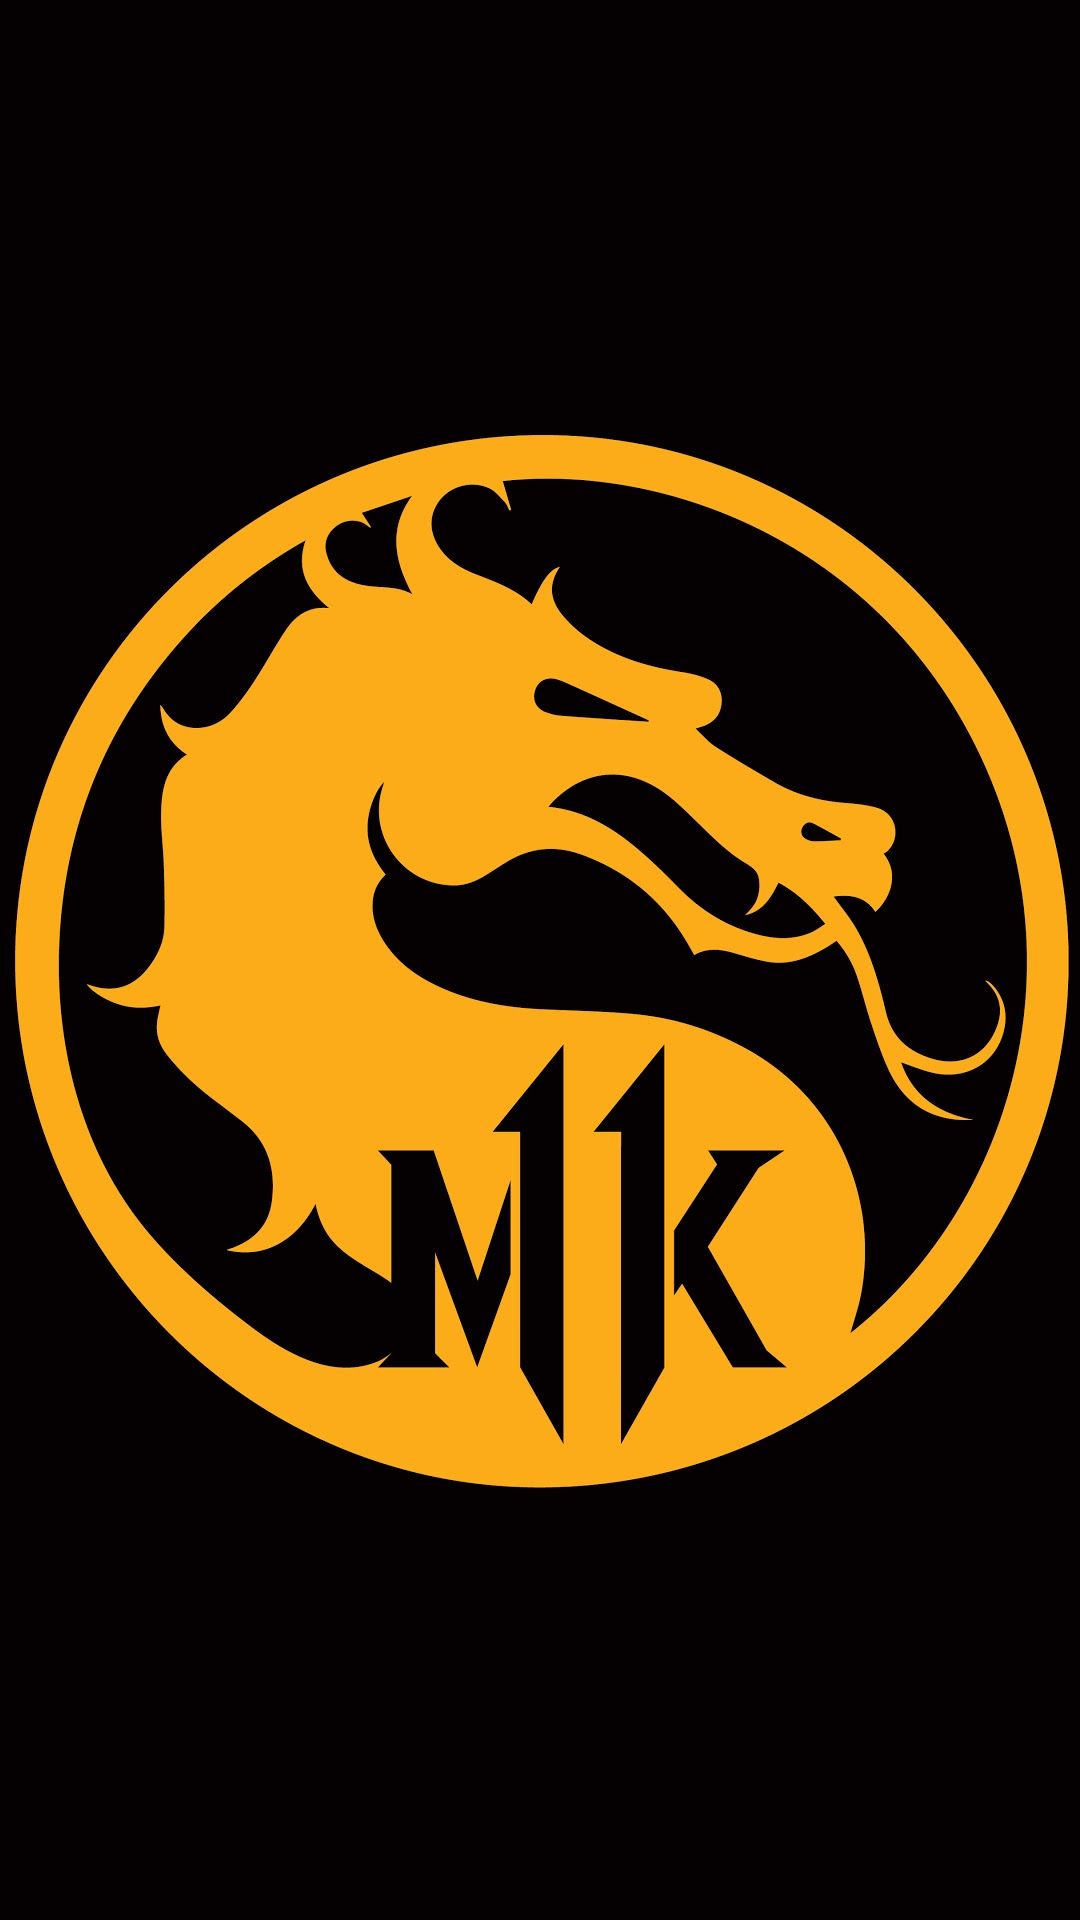 MK Logo Phone Wallpapers Wallpaper Cave